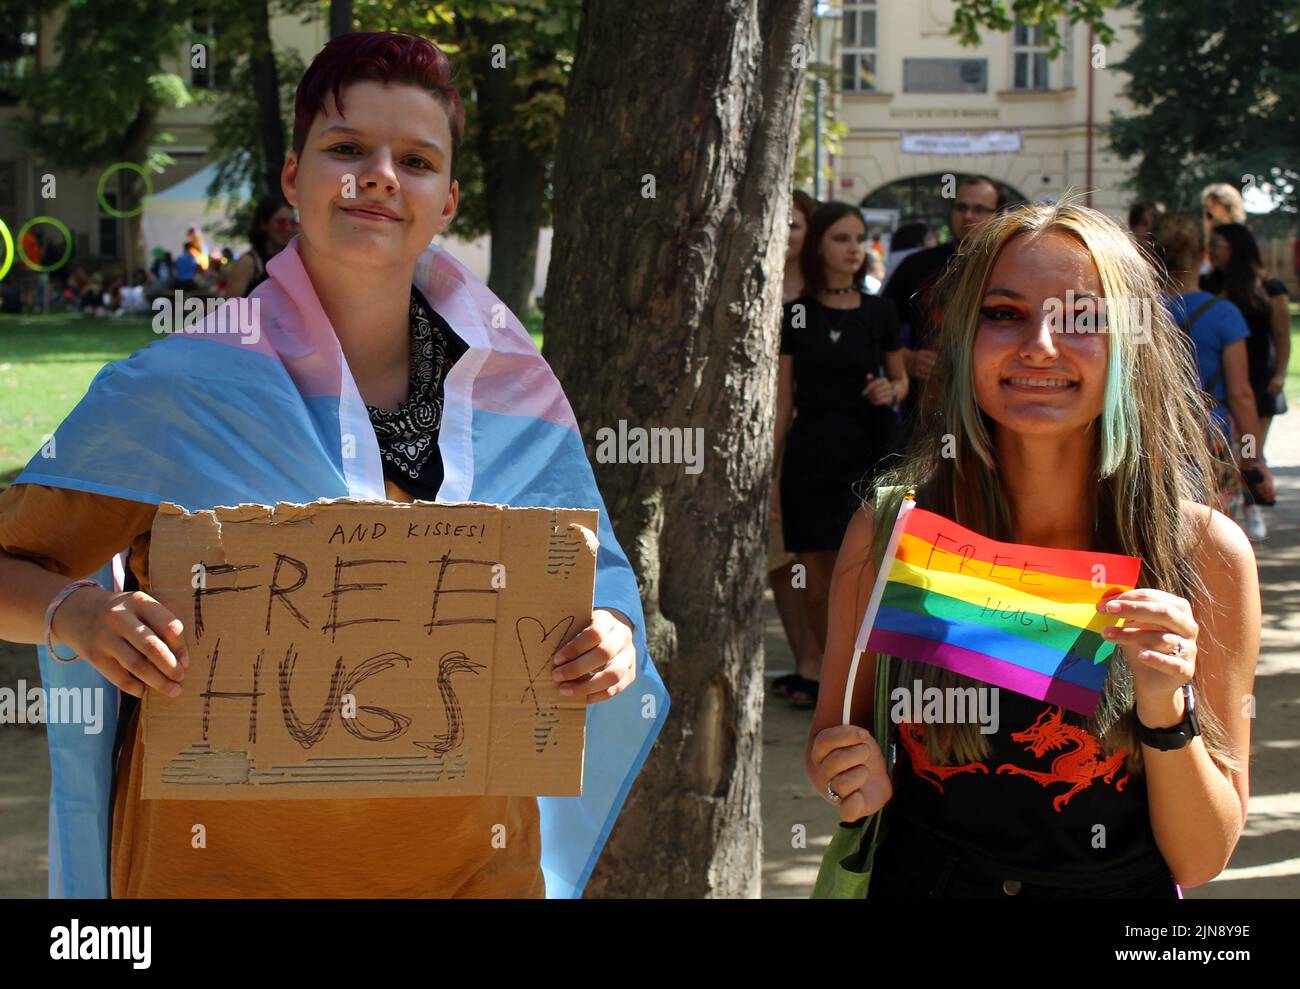 El 12th festival anual de derechos humanos con temática queer, Praga Pride, en la isla Strelecky, Praga, República Checa, fotografiado el 9 de agosto de 2022. Foto de stock